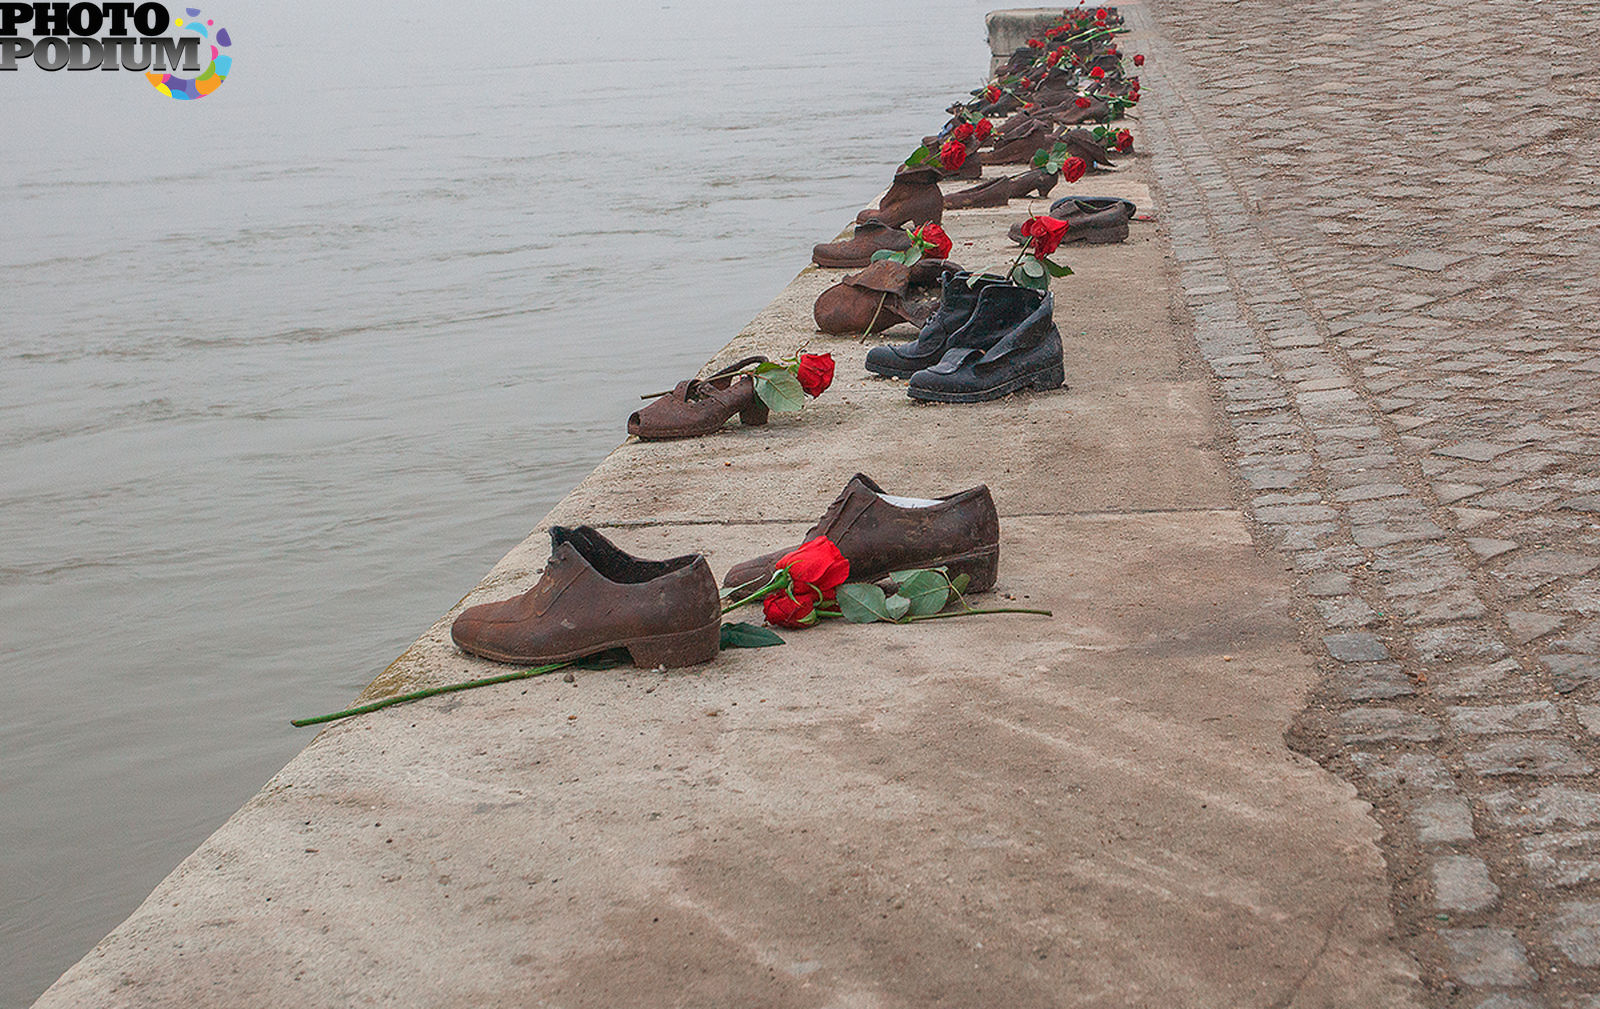 Песня вышла мадьярка. Мемориал "туфли на набережной Дуная". Будапешт.. Памятник обувь на набережной Дуная. Памятник в Будапеште обувь на берегу Дуная. Будапешт памятник ботинки на набережной.